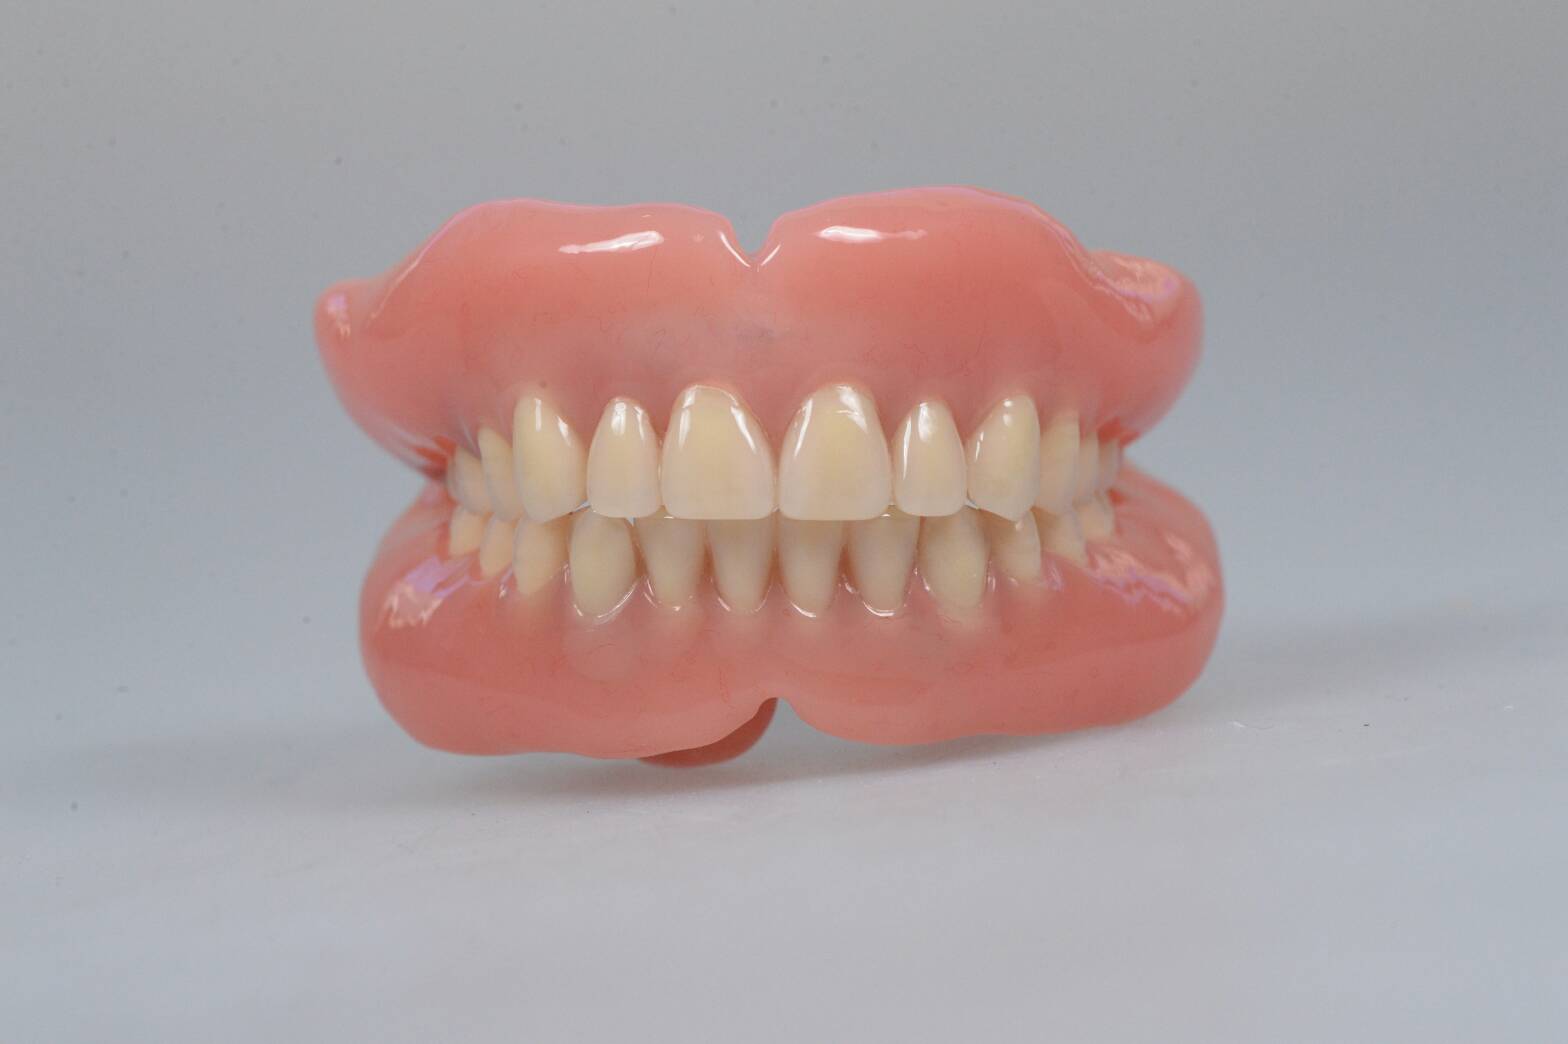 総入れ歯にするタイミングについて〜残せる歯があるかどうか不安です。（50代女性）〜 東京千代田区のドイツ式入れ歯専門 稲葉歯科医院